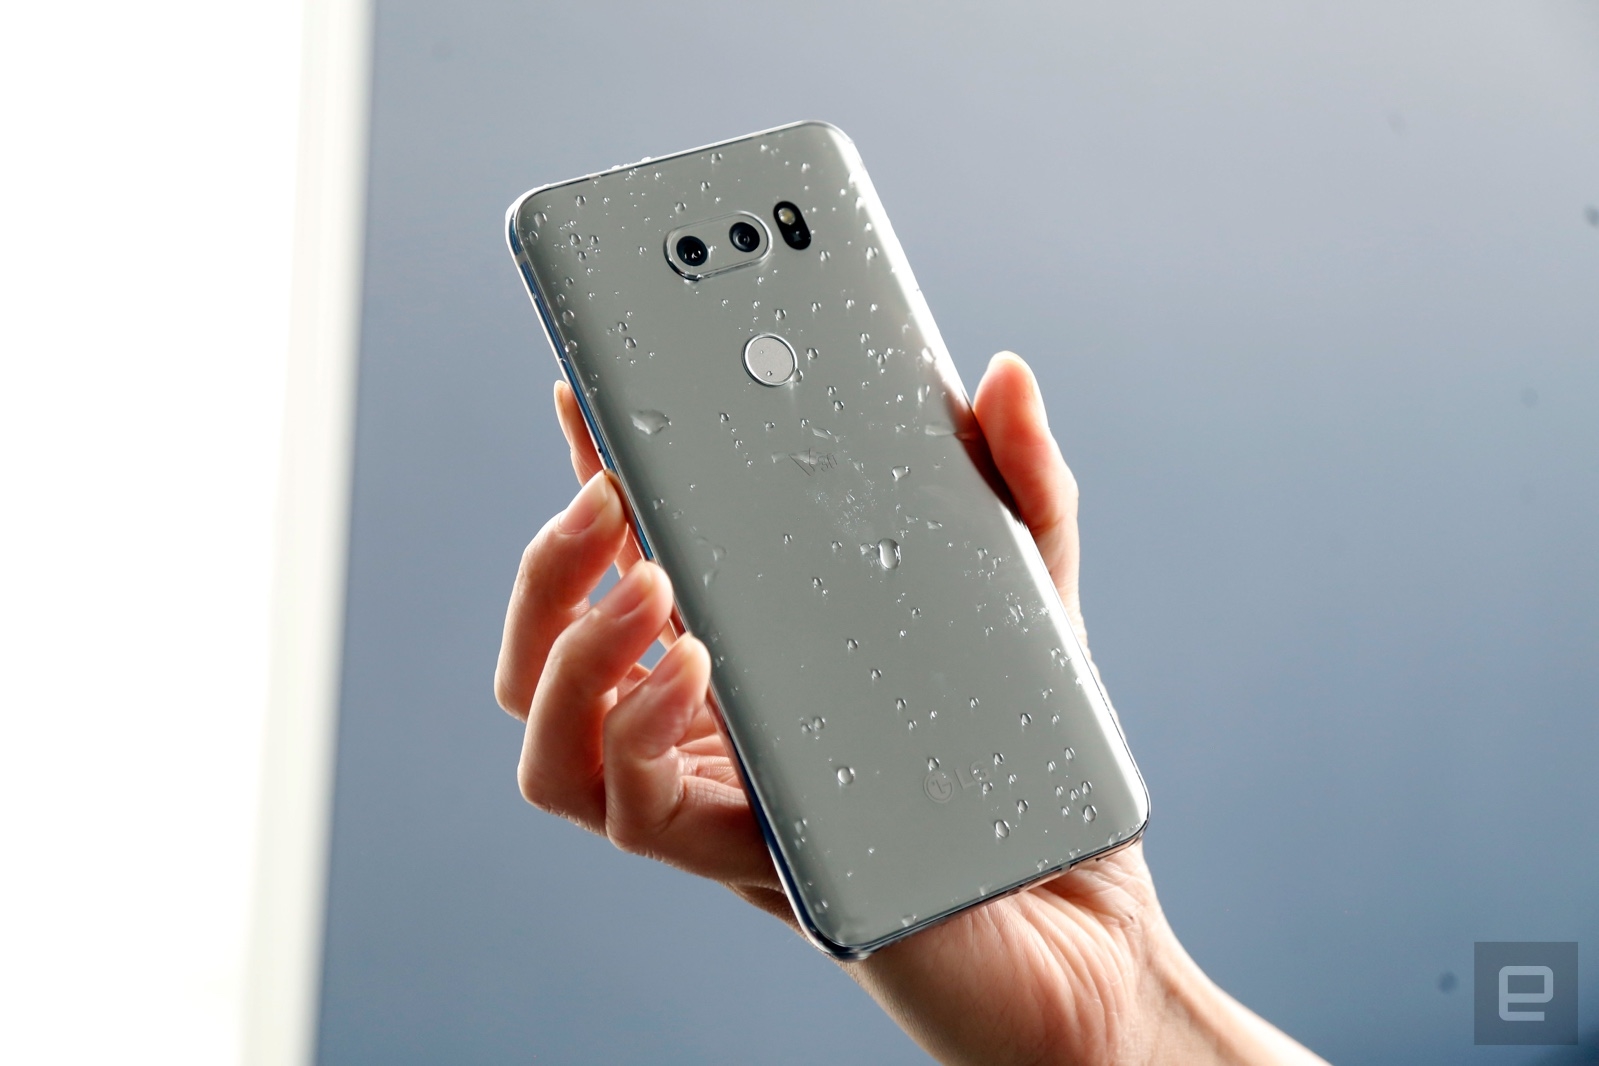 LG V30 review: LG’s latest flagship needs more polish | DeviceDaily.com